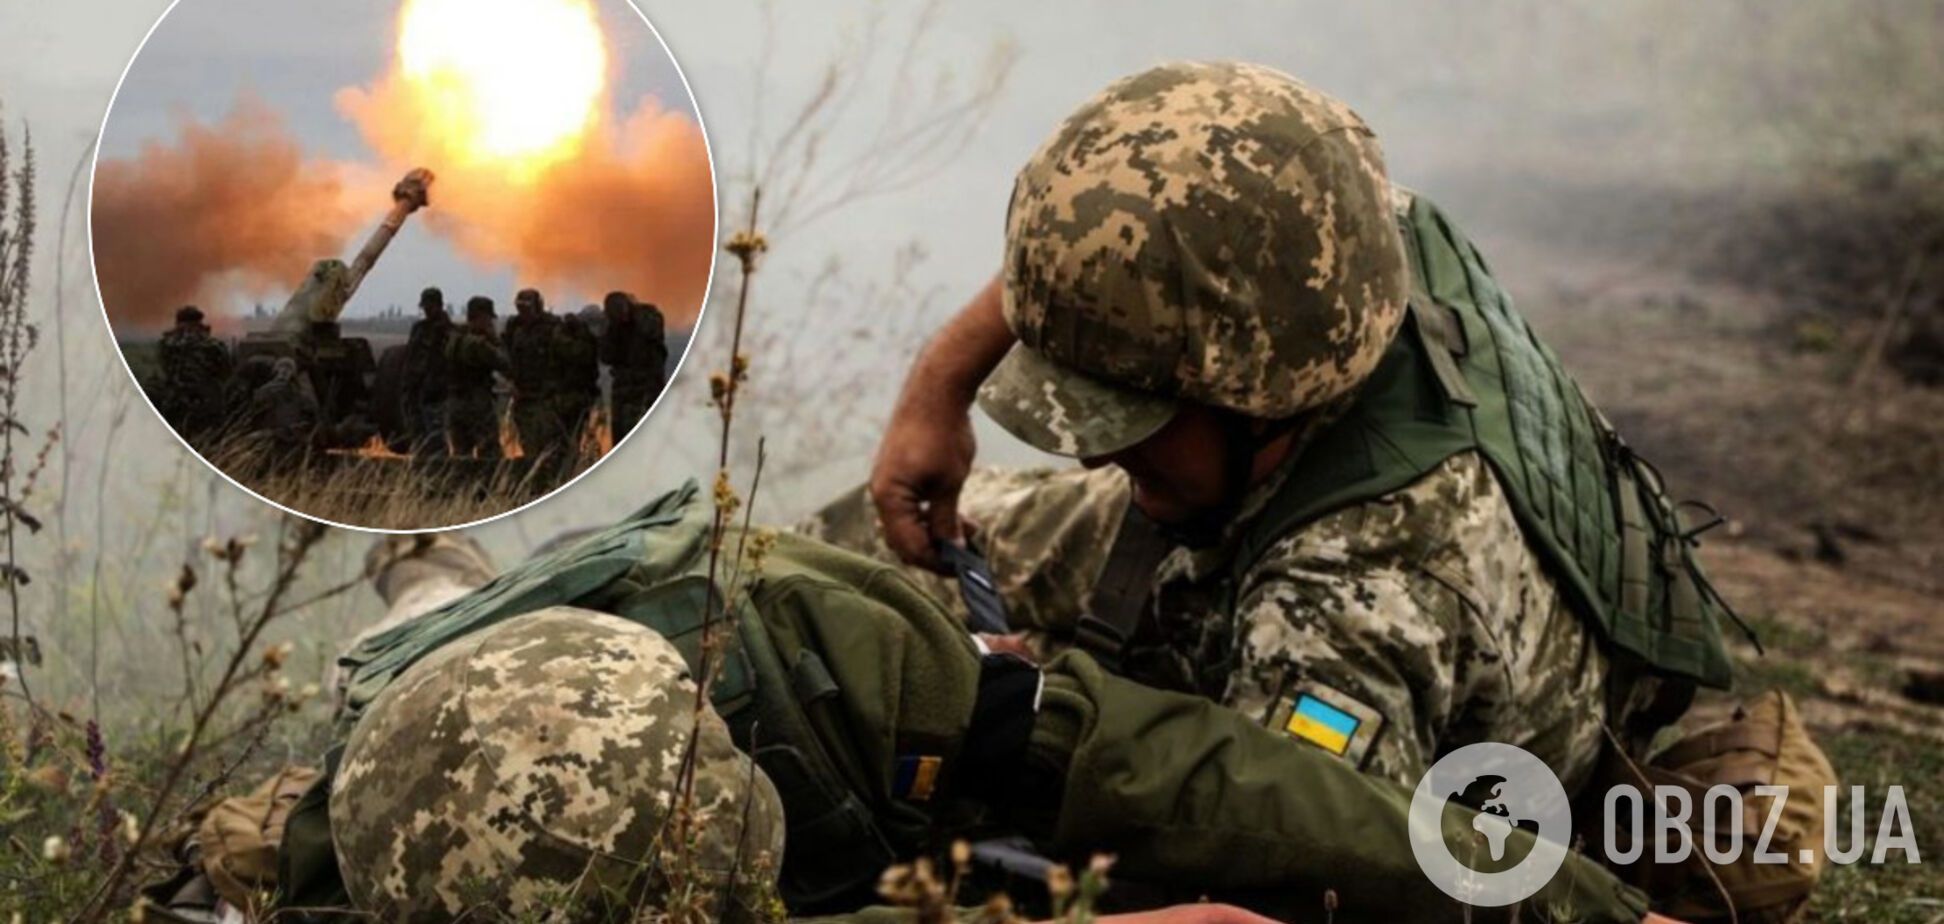 Наемники Путина устроили 'ад' на Донбассе: ранены двое воинов ВСУ